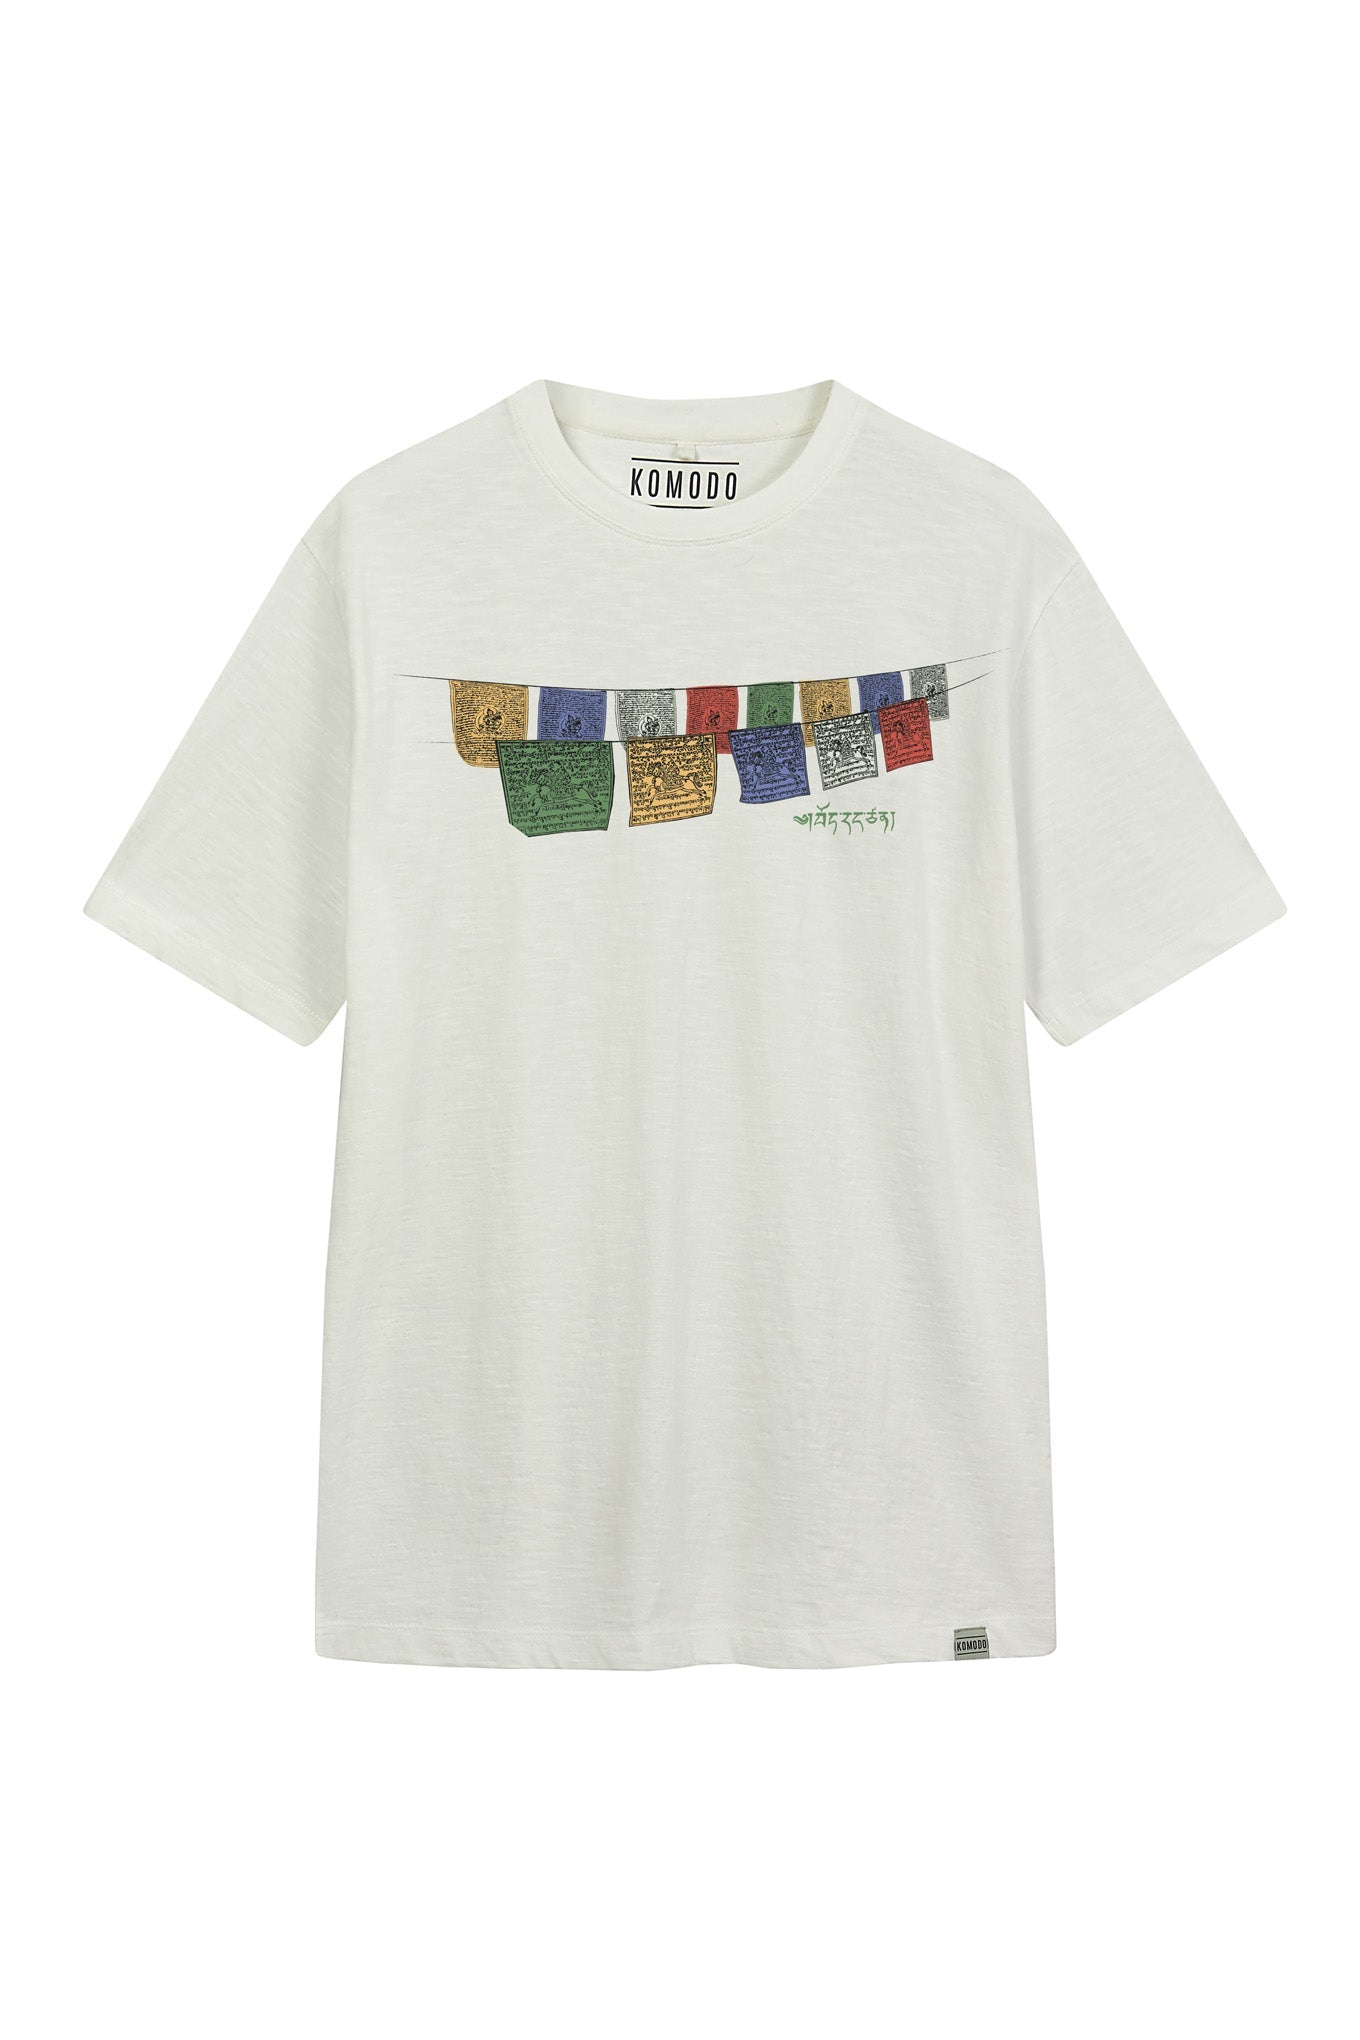 Weisses T-Shirt FREE TIBET aus Bio-Baumwolle von Komodo